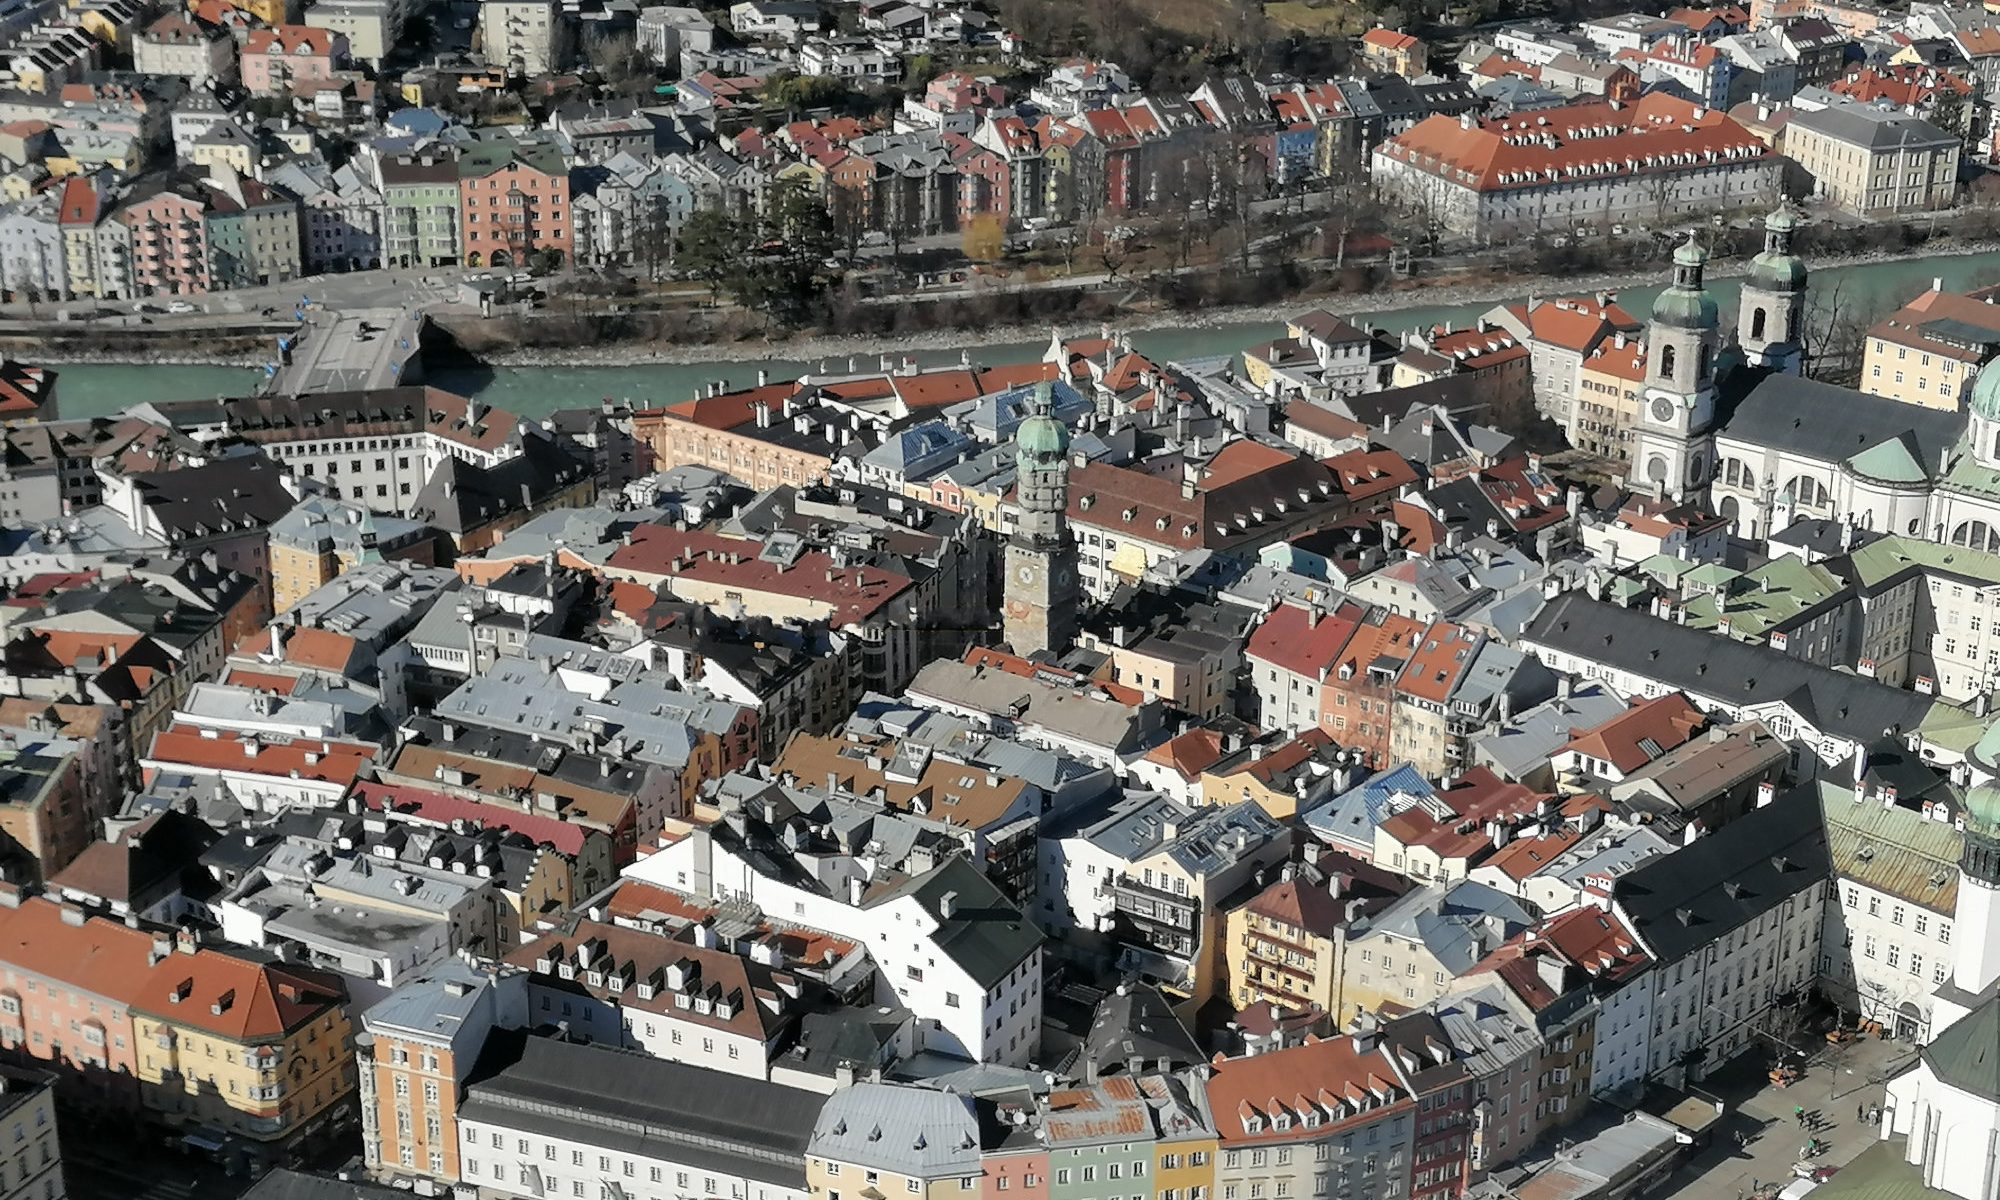 Querformat; Luftbild der Innsbrucker Altstadt; sonniger Tag, viele Häuser mit ihren Dächern; im oberen Drittel der Fluss Inn, dahinter das bekannte Panorama Mariahilf mit den vielen bunten Häusern.